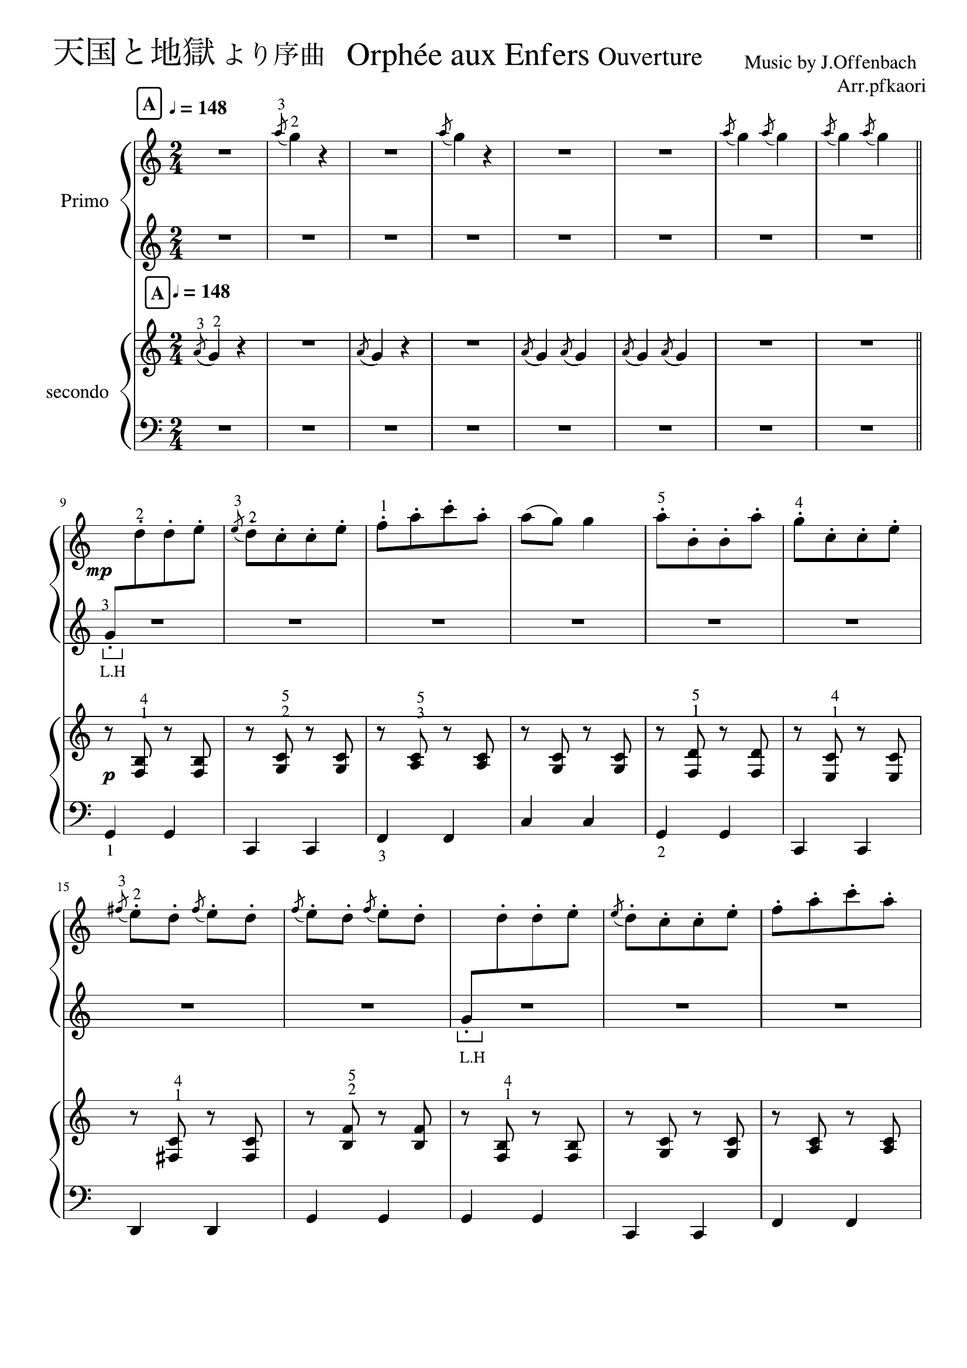 オッフェンバック - 天国と地獄 より「序曲」 (Cdur・ピアノ連弾初〜中級) by pfkaori